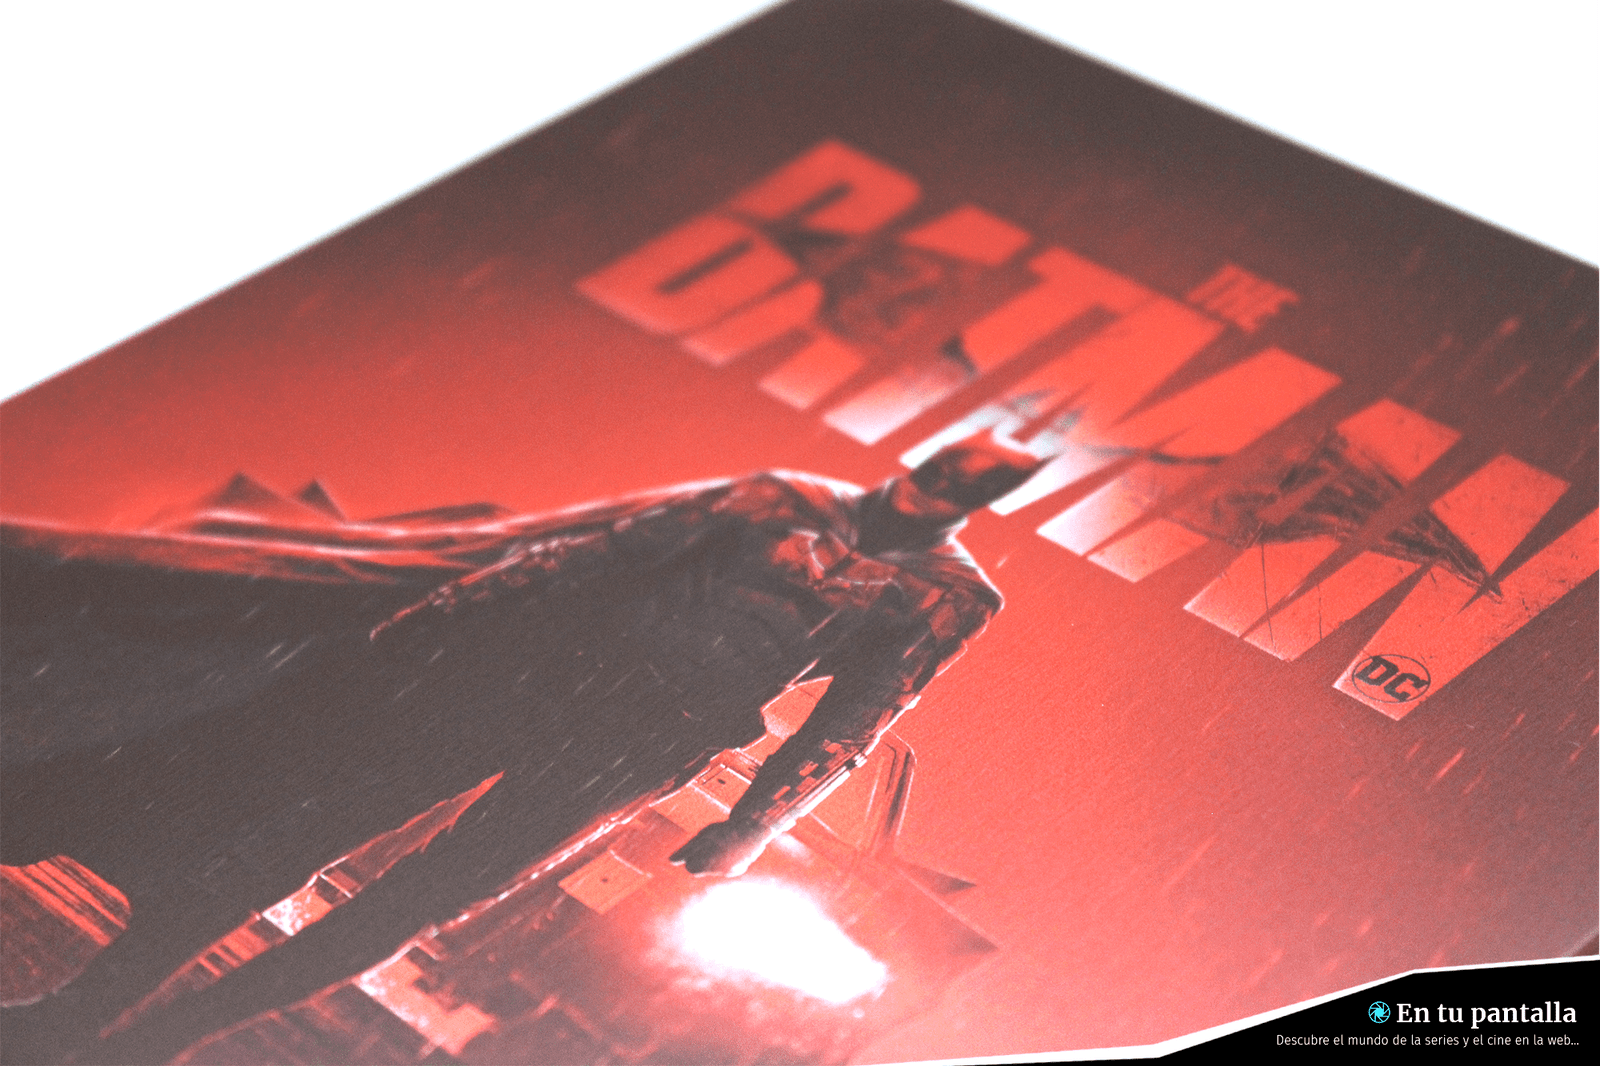 ‘The Batman’: Un vistazo a la edición steelbook 4K Ultra HD • En tu pantalla